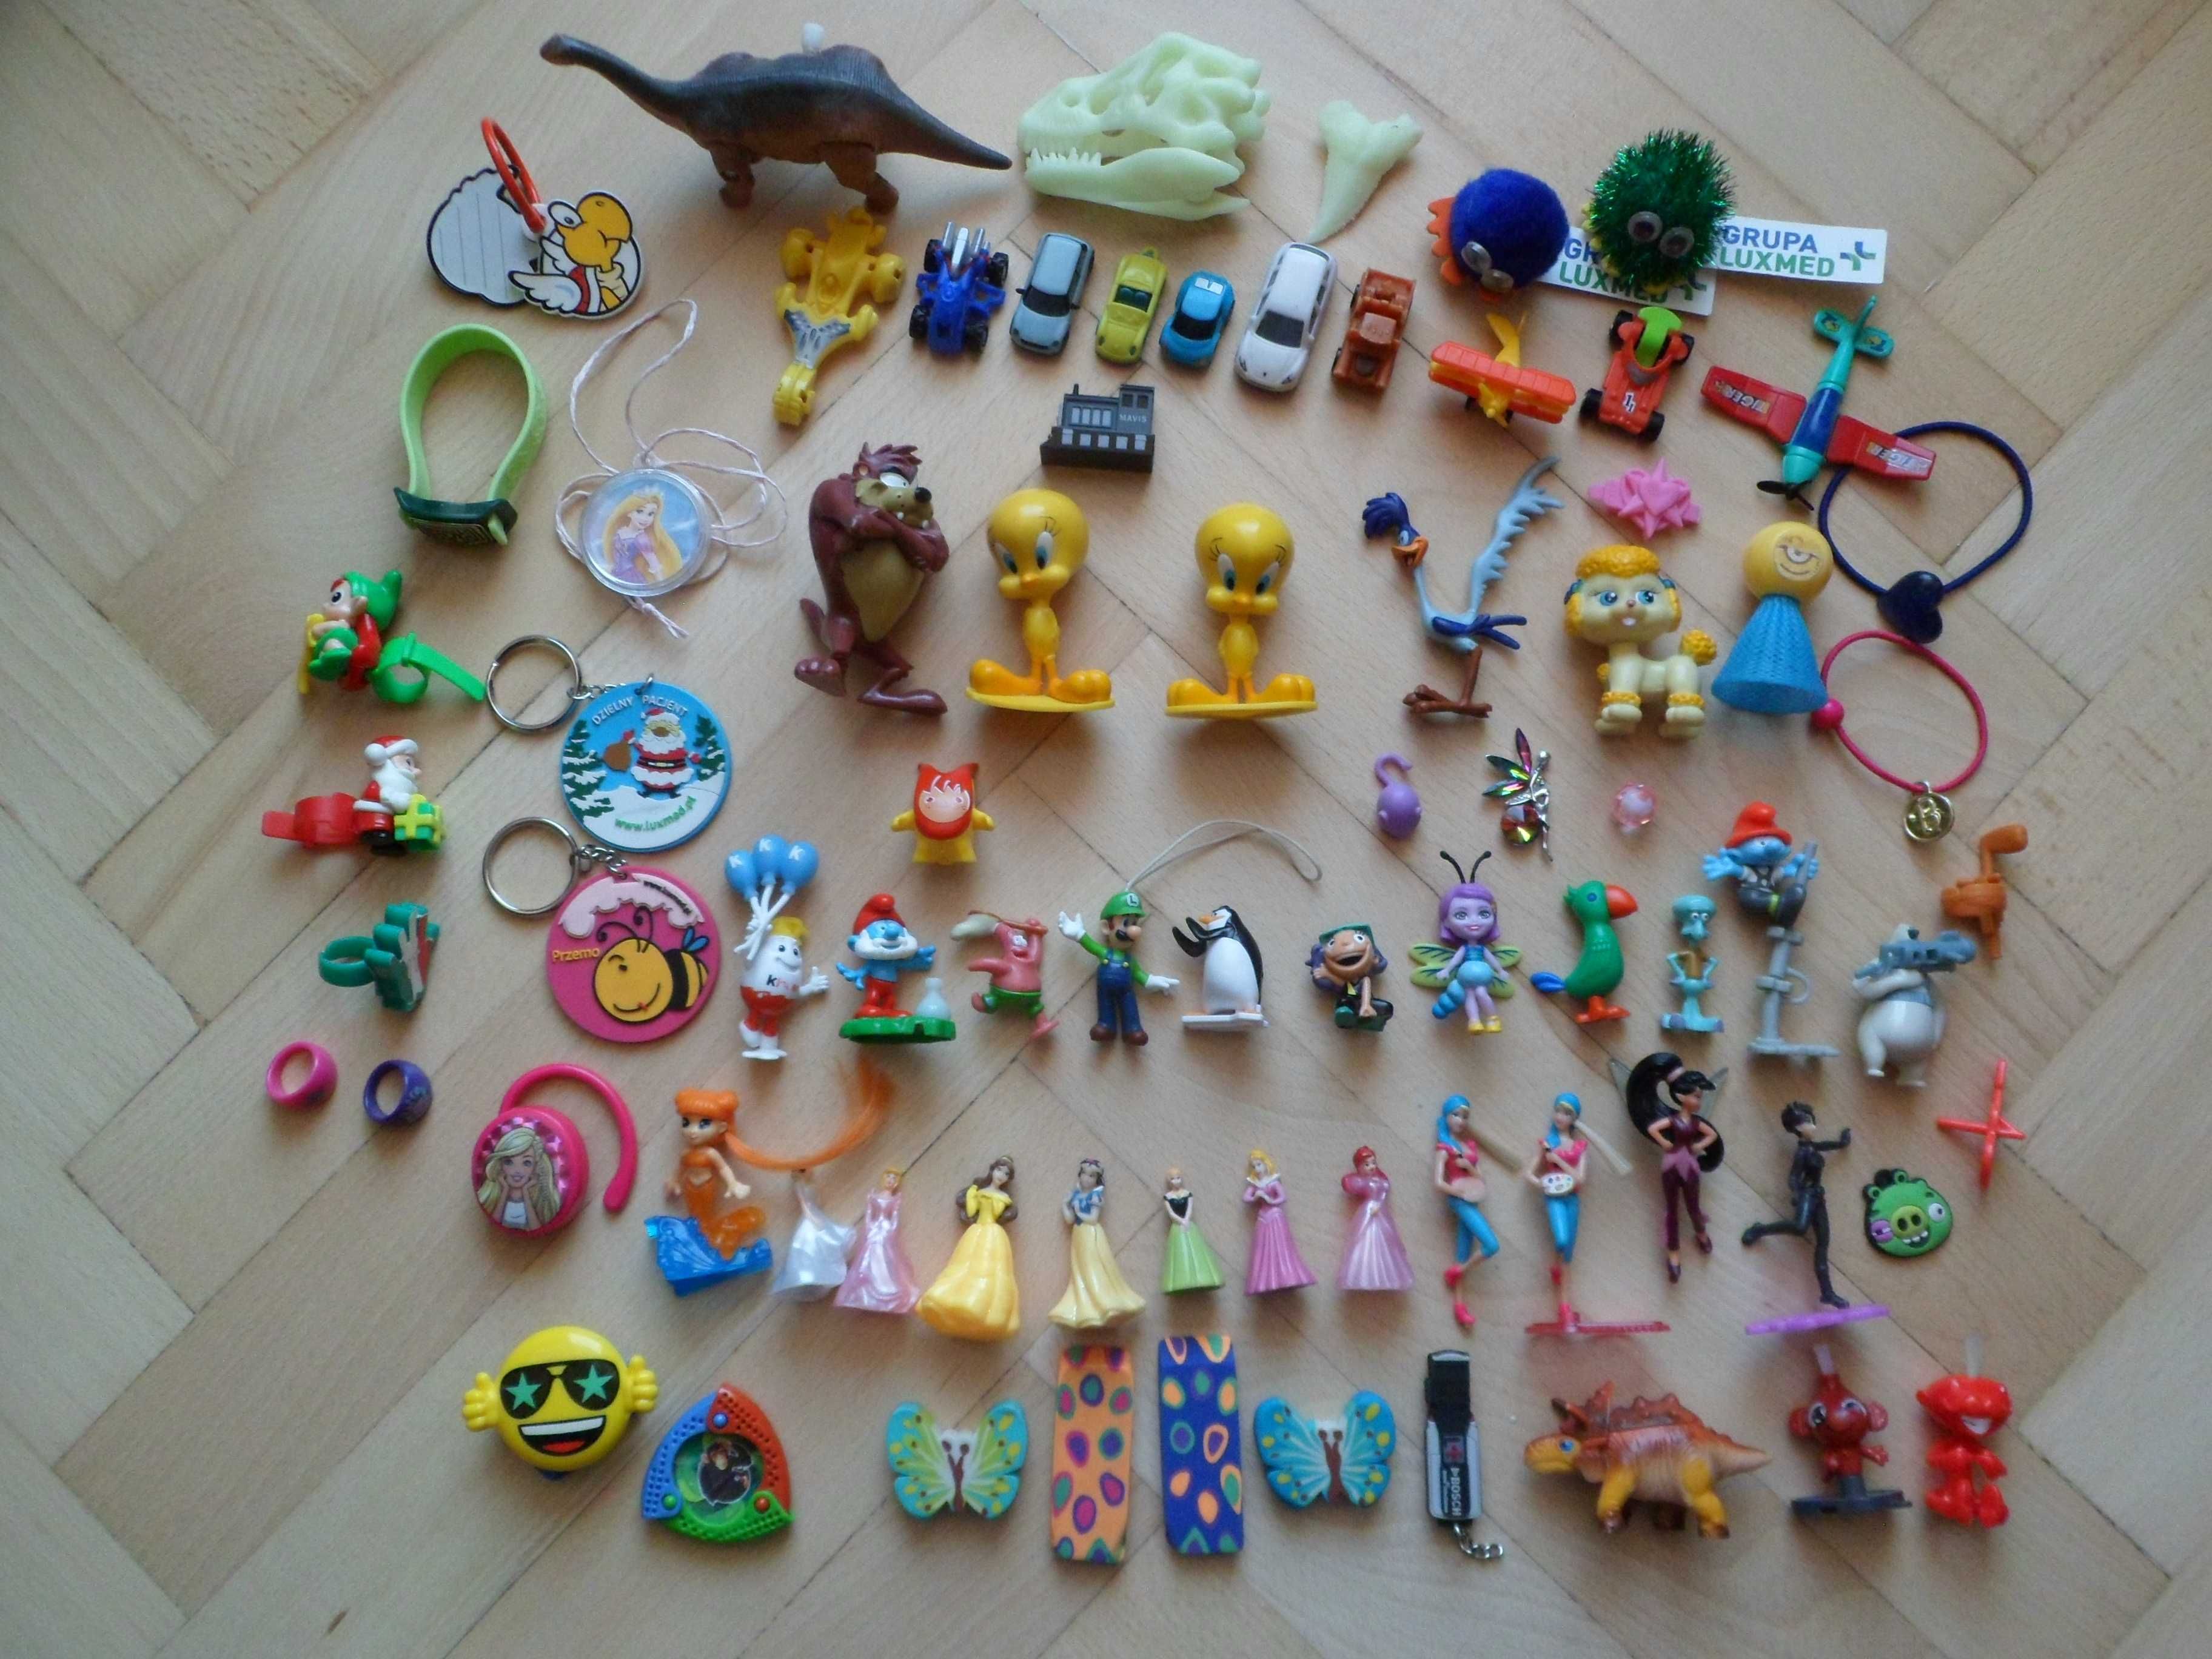 Zestaw zabawek - figurki, breloczki, auta, księżniczki, bajki